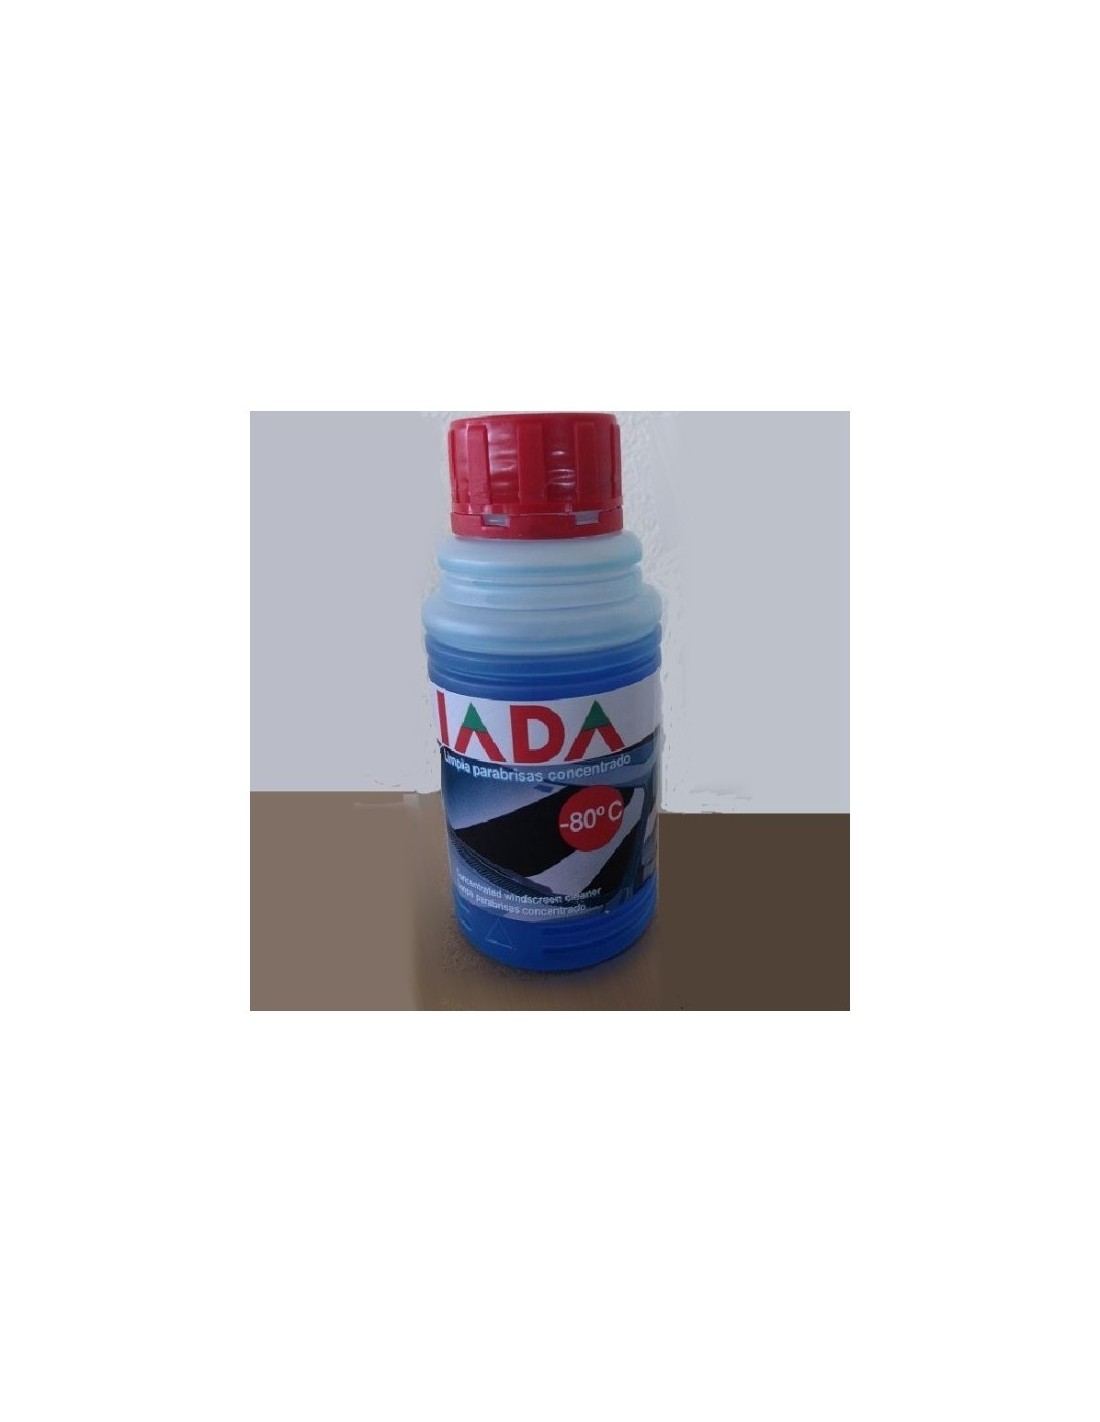 Limpiaparabrisas Concentrado IADA, 250 ml - 2,90 € -   Capacidad 250 ml